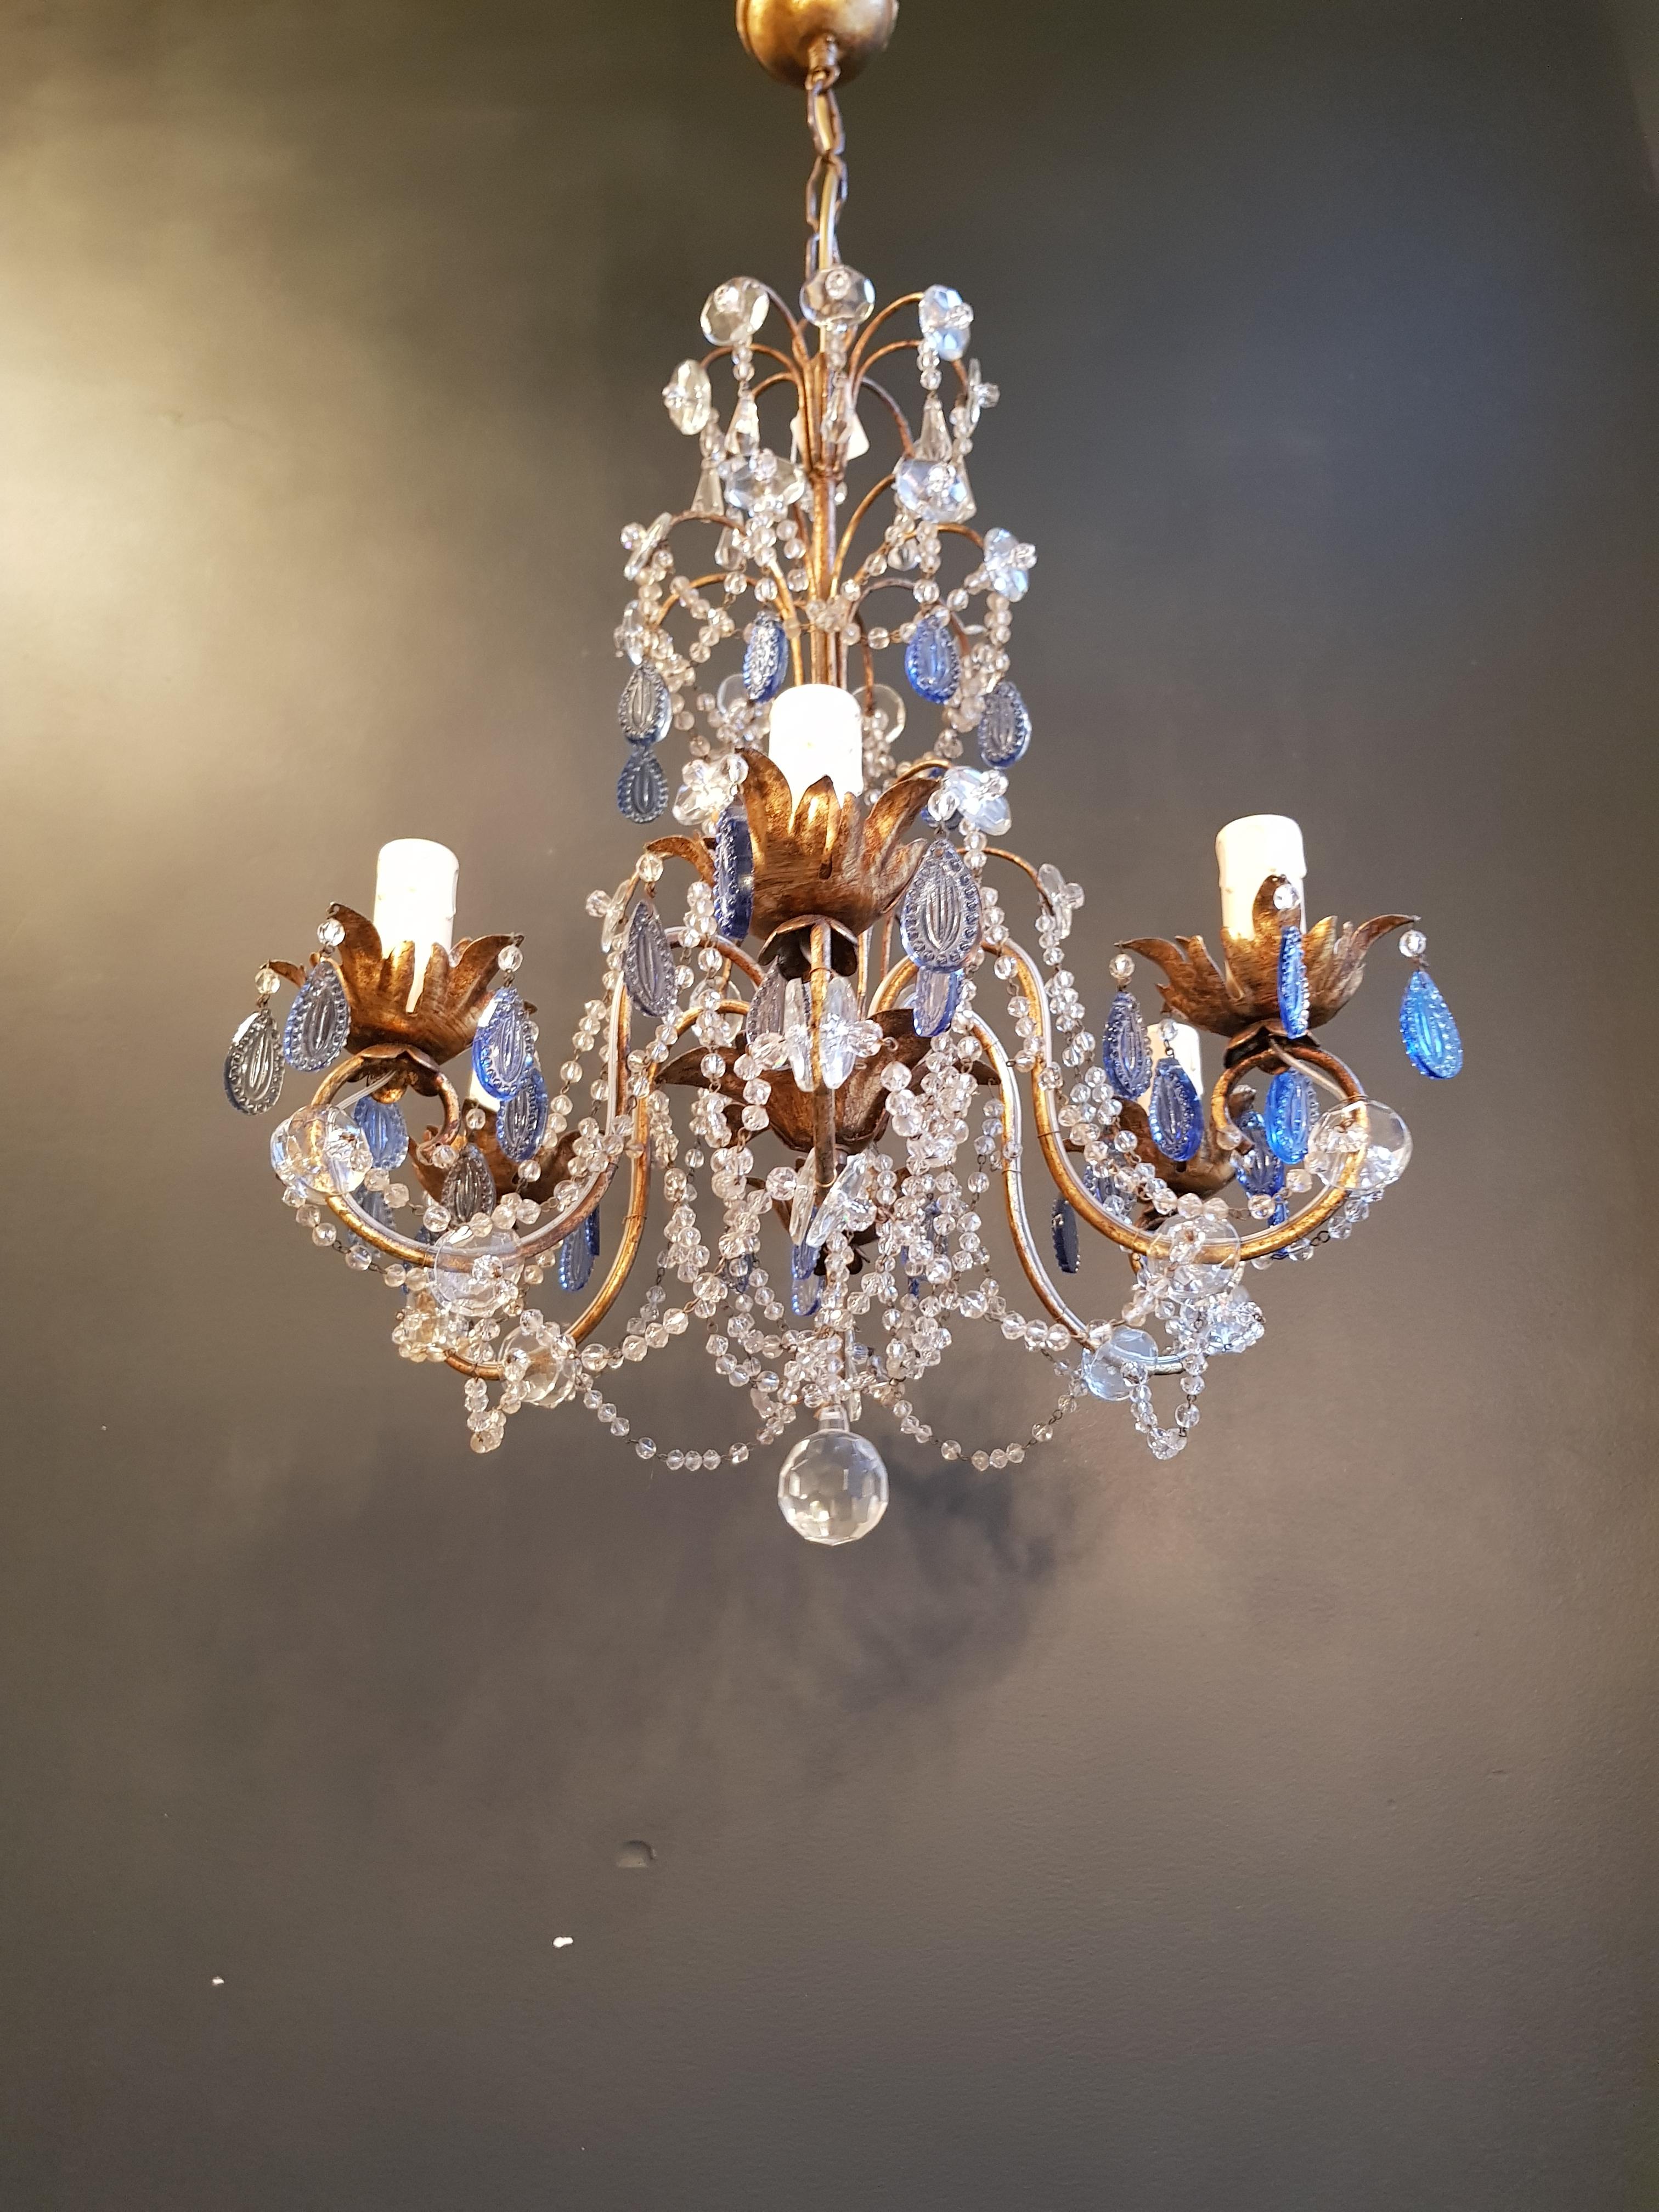 Mid-20th Century Fine Beaded Blue Crystal Chandelier Antique Ceiling Lamp Lustre Art Nouveau